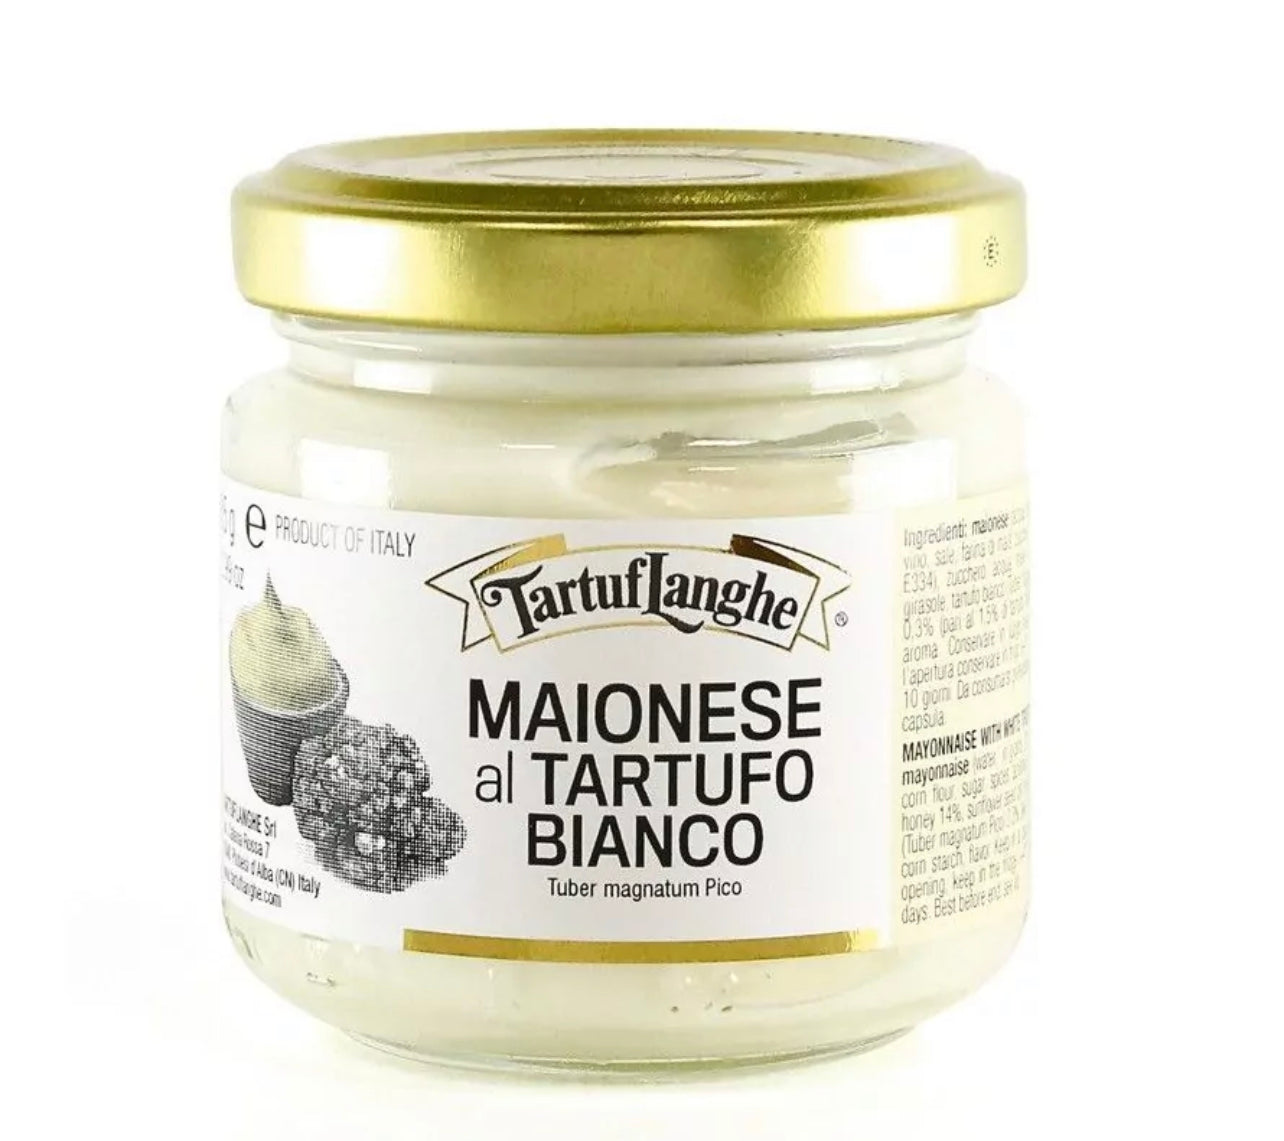 Tuber Magnatum Pico white truffle mayonnaise - 85g